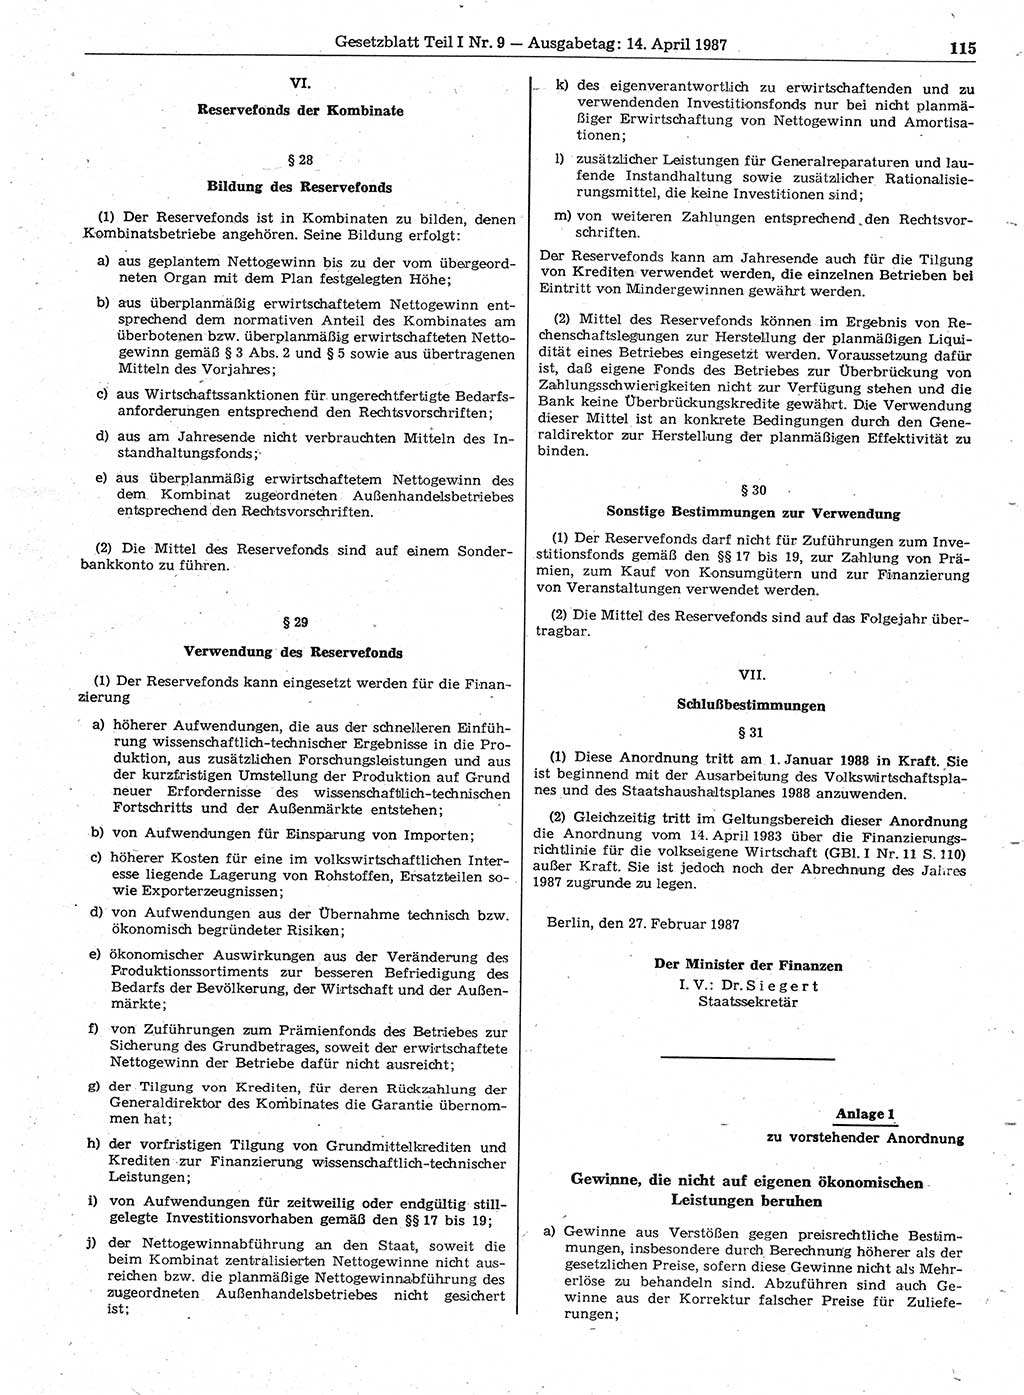 Gesetzblatt (GBl.) der Deutschen Demokratischen Republik (DDR) Teil Ⅰ 1987, Seite 115 (GBl. DDR Ⅰ 1987, S. 115)